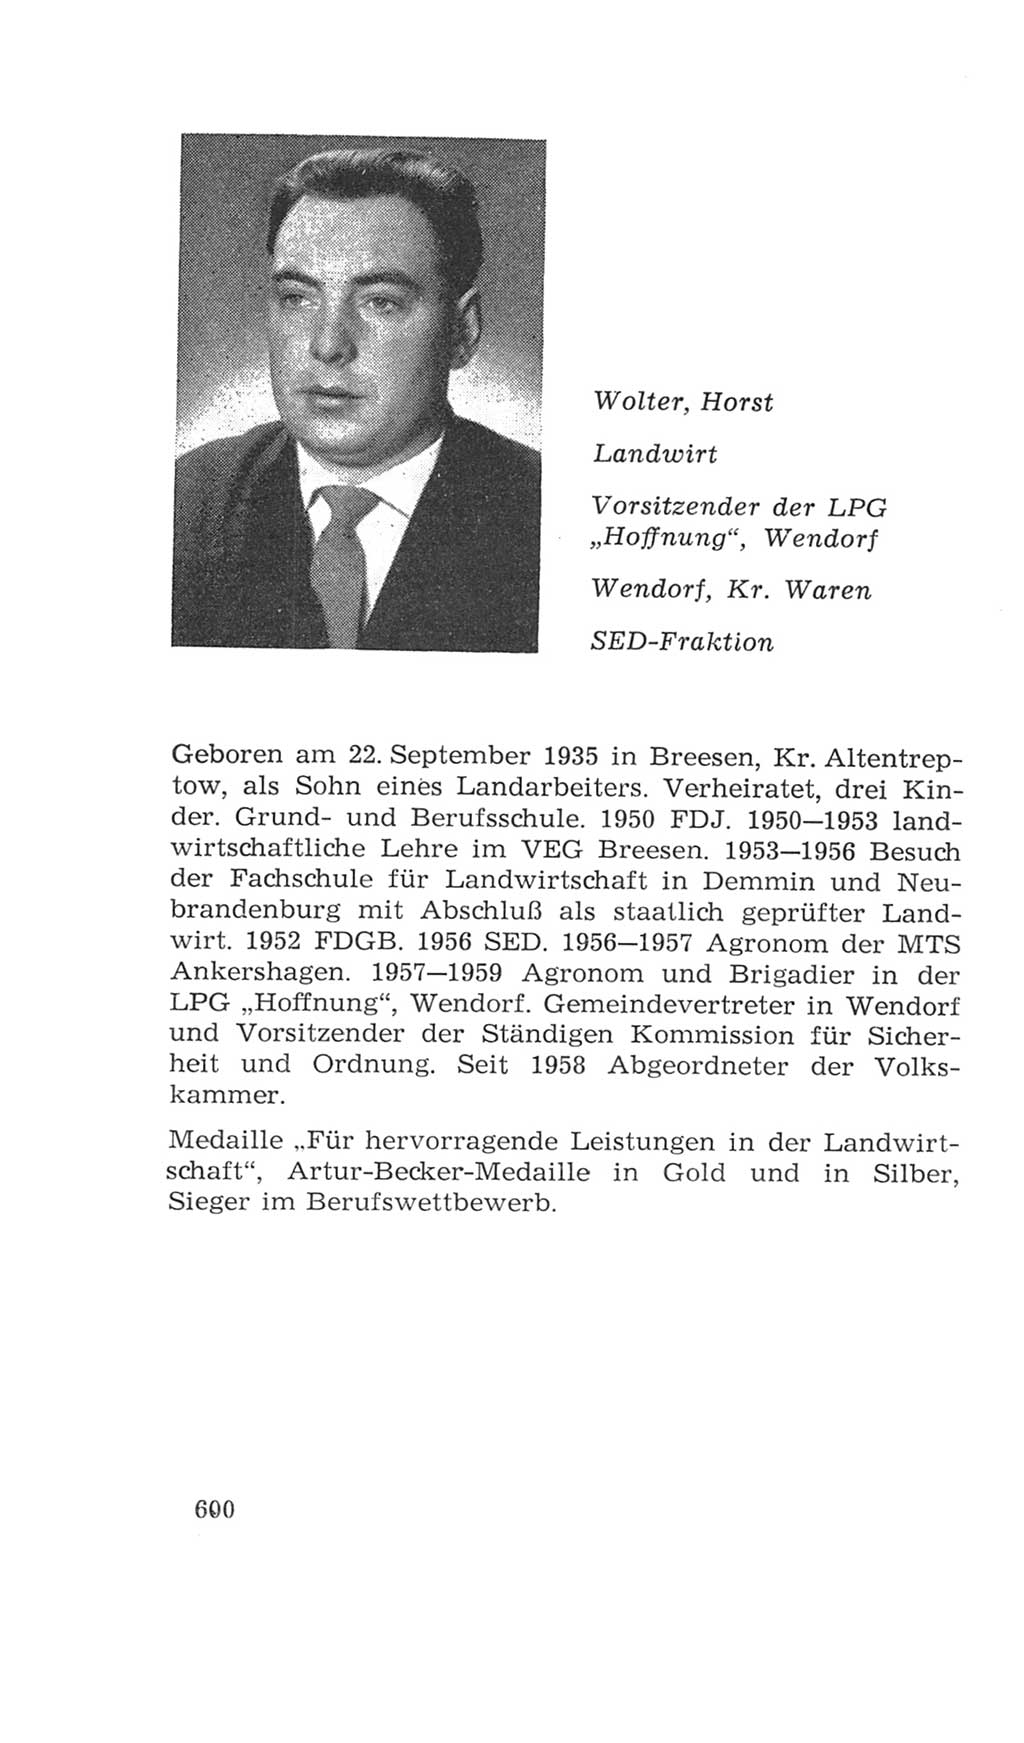 Volkskammer (VK) der Deutschen Demokratischen Republik (DDR), 4. Wahlperiode 1963-1967, Seite 600 (VK. DDR 4. WP. 1963-1967, S. 600)